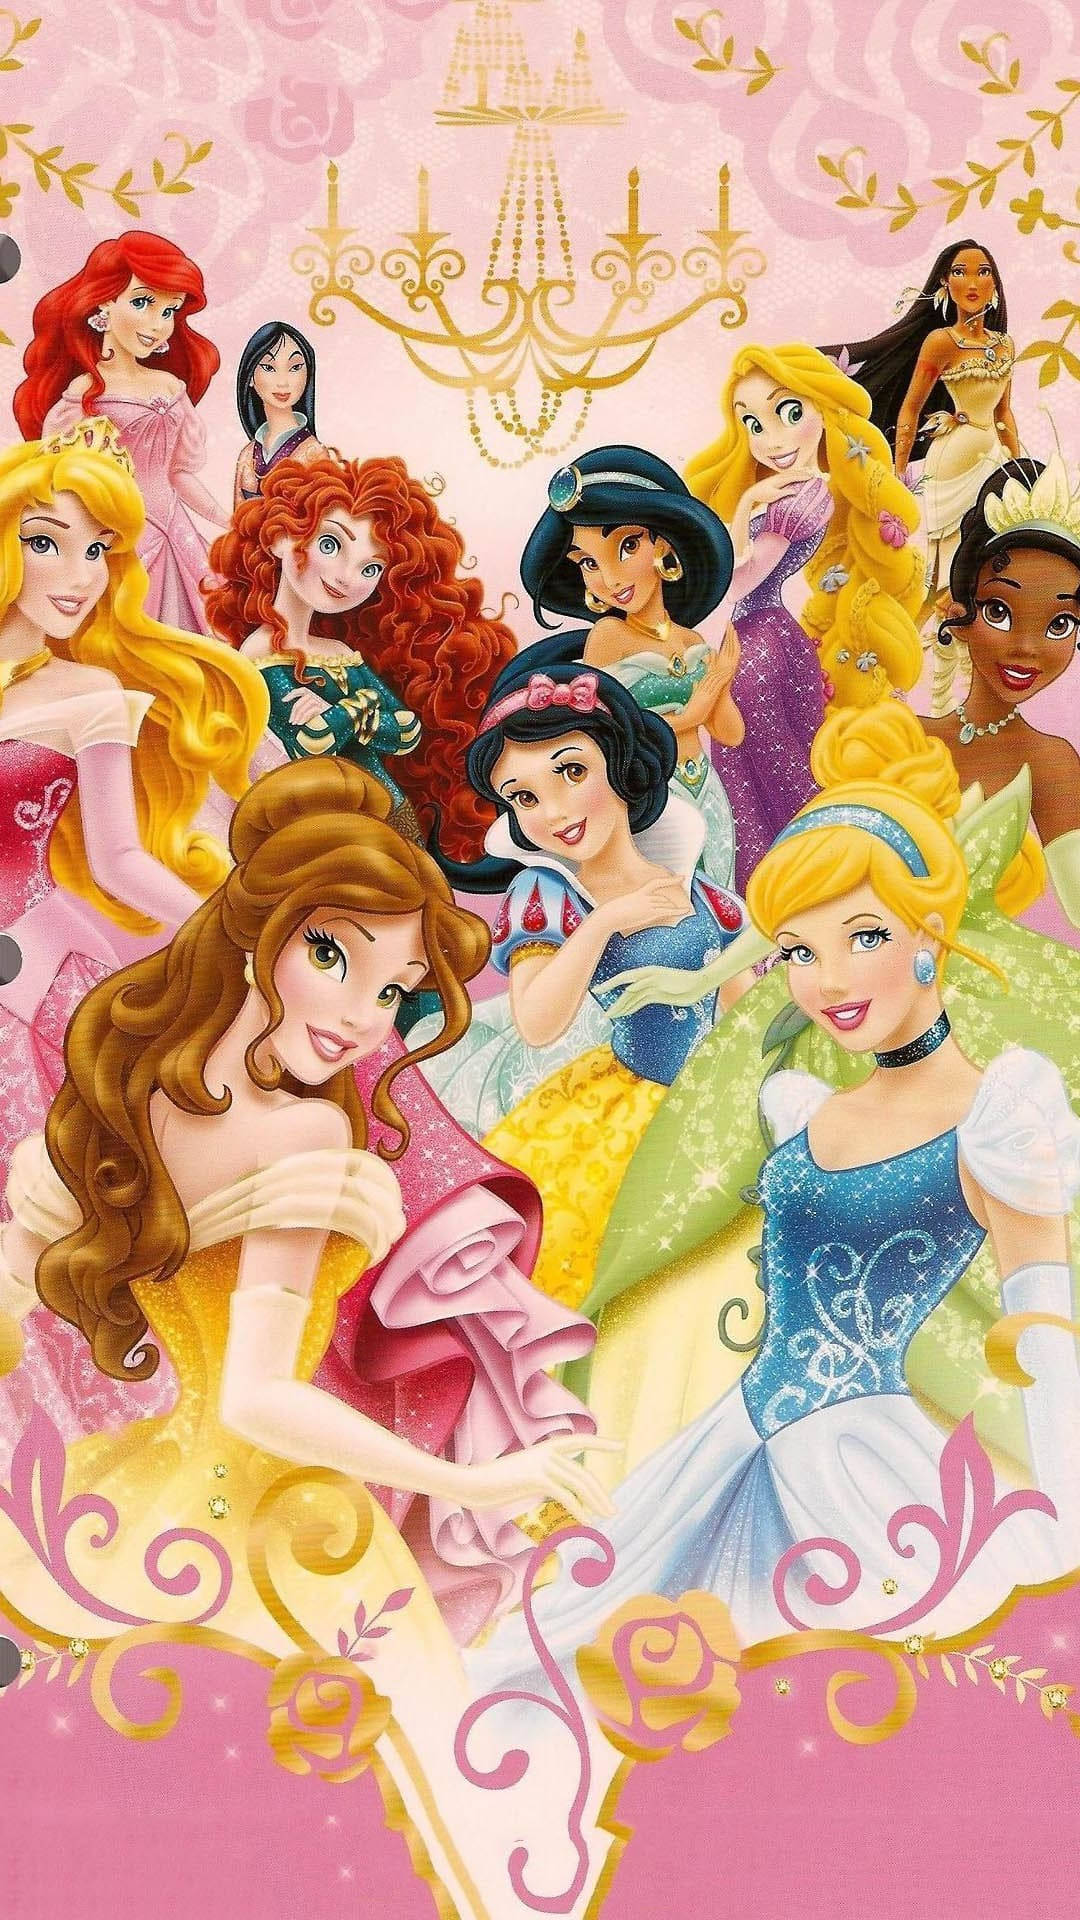 Låtdin Inre Prinsessa Lysa I Denna Söta Och Estetiska Disney Princess-klädsel! Wallpaper